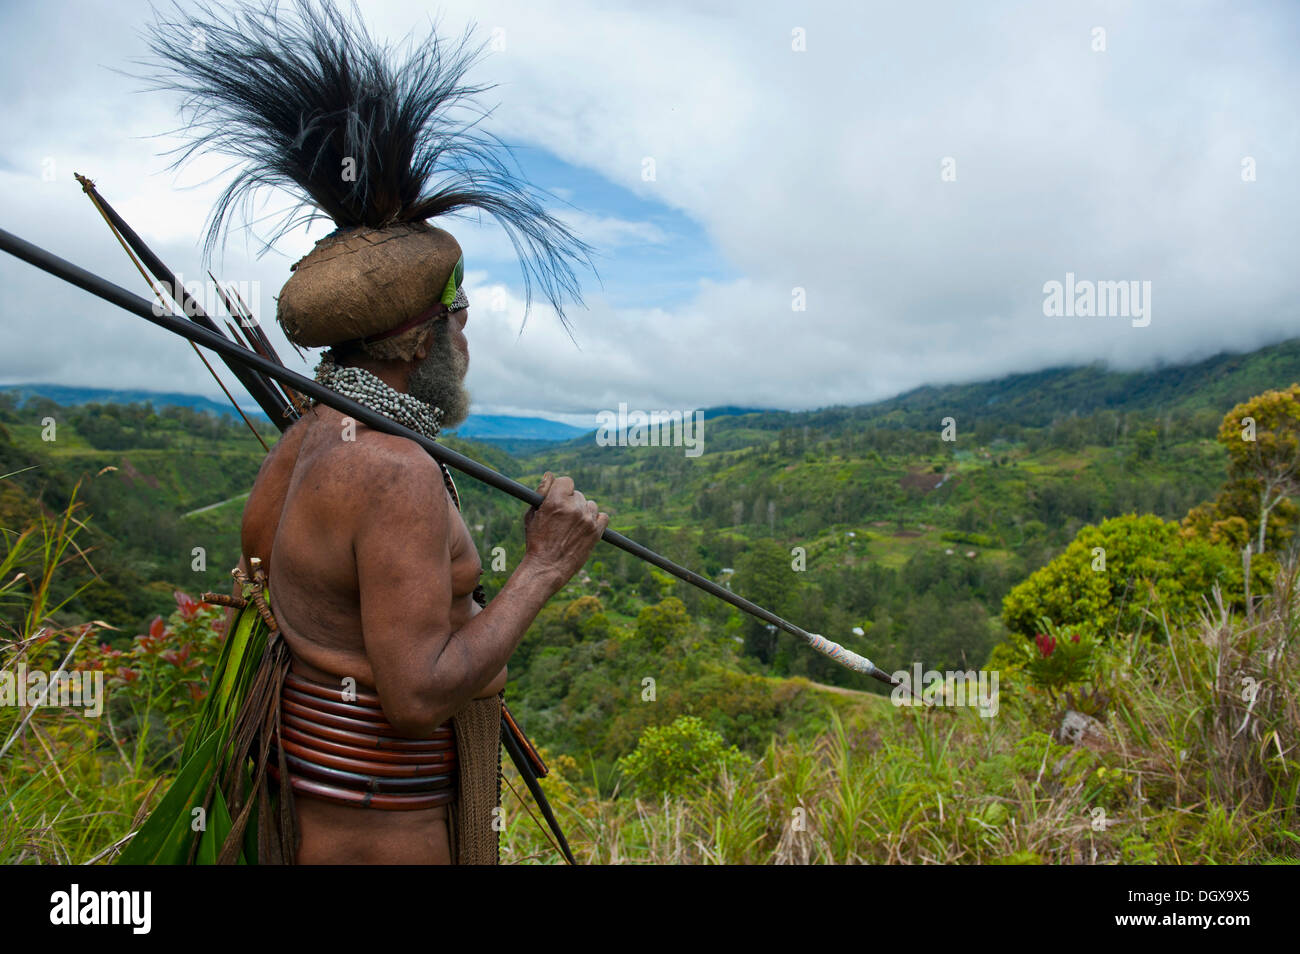 Traditionell gekleidete Stammesführer im Hochland, Paya, Highland, Papua New Guinea Stockfoto